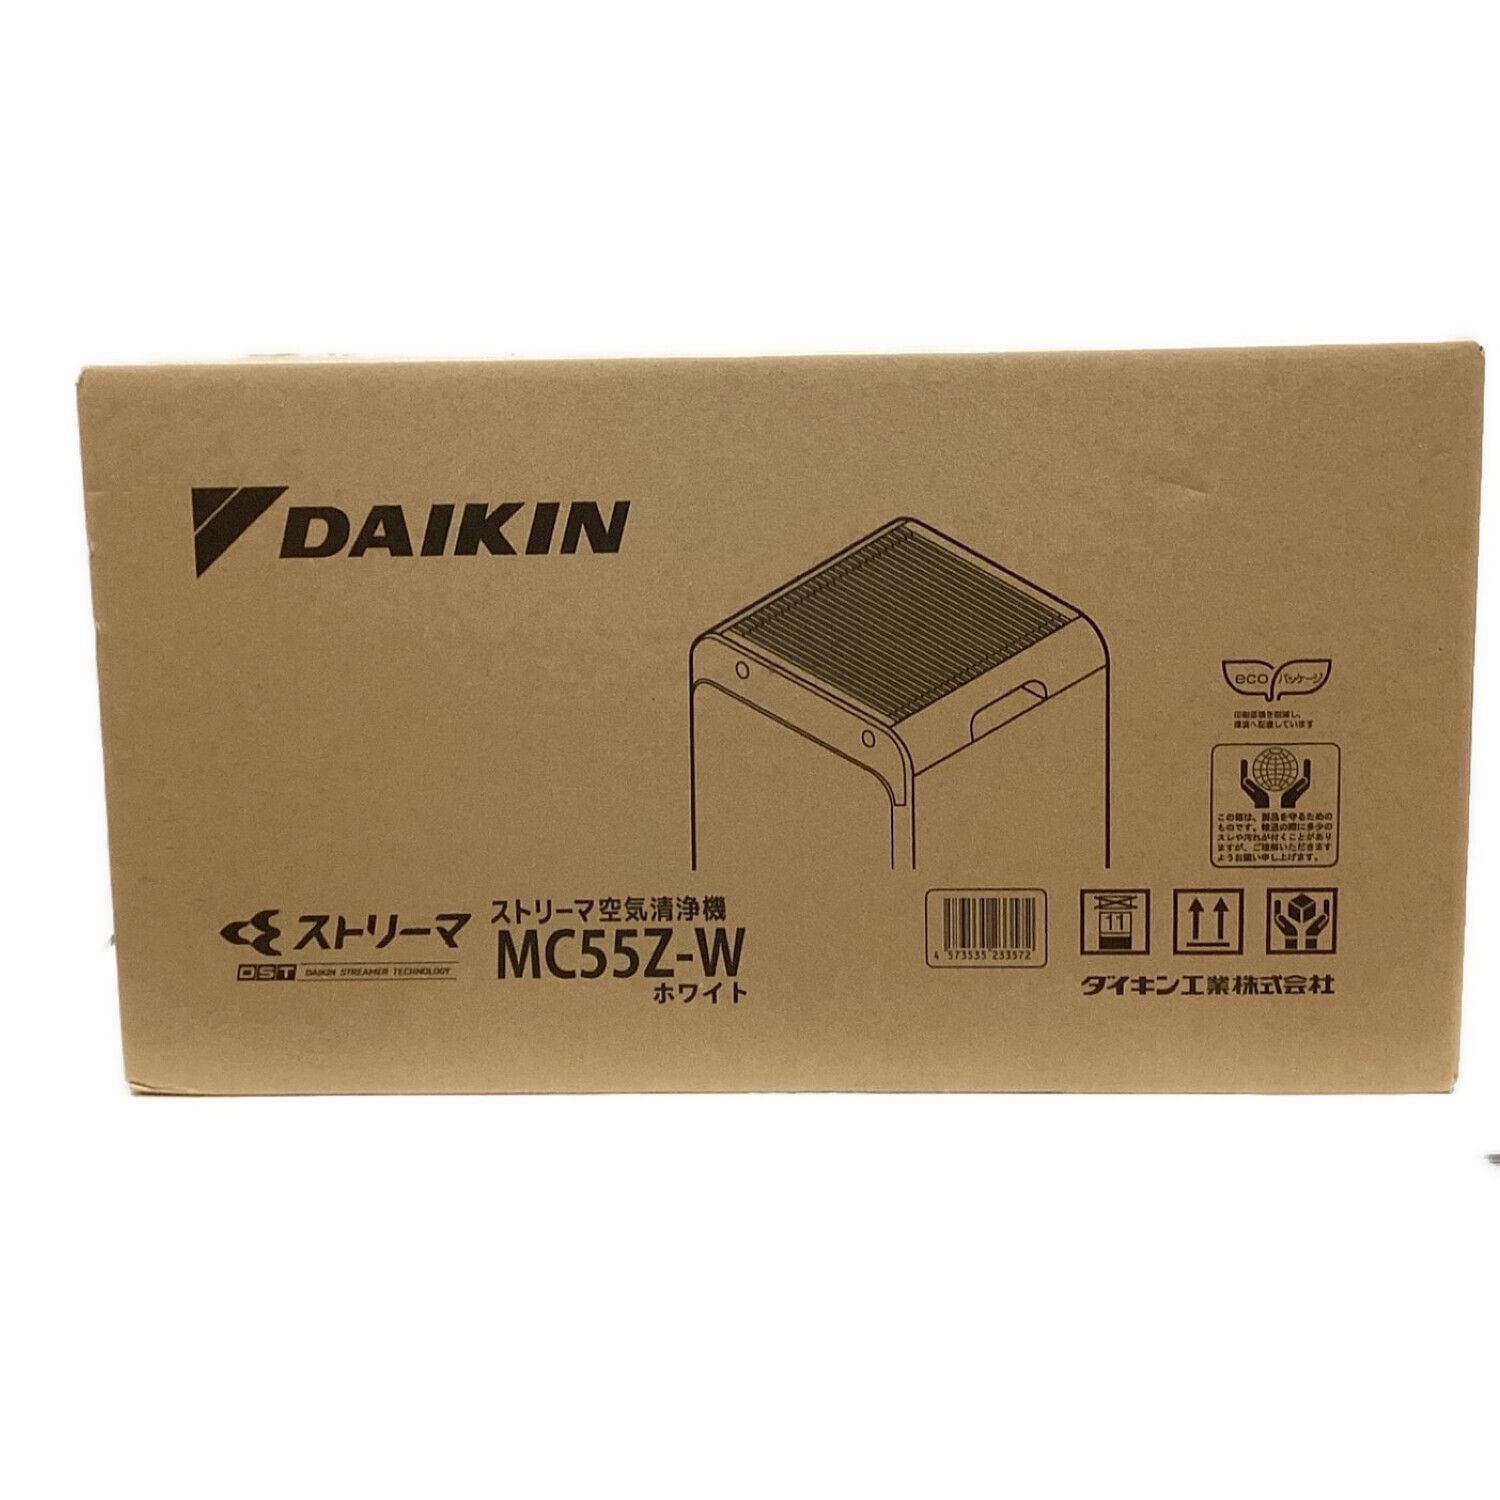 最短出荷 DAIKIN ダイキン MC55Z-W ストリーマ空気清浄機